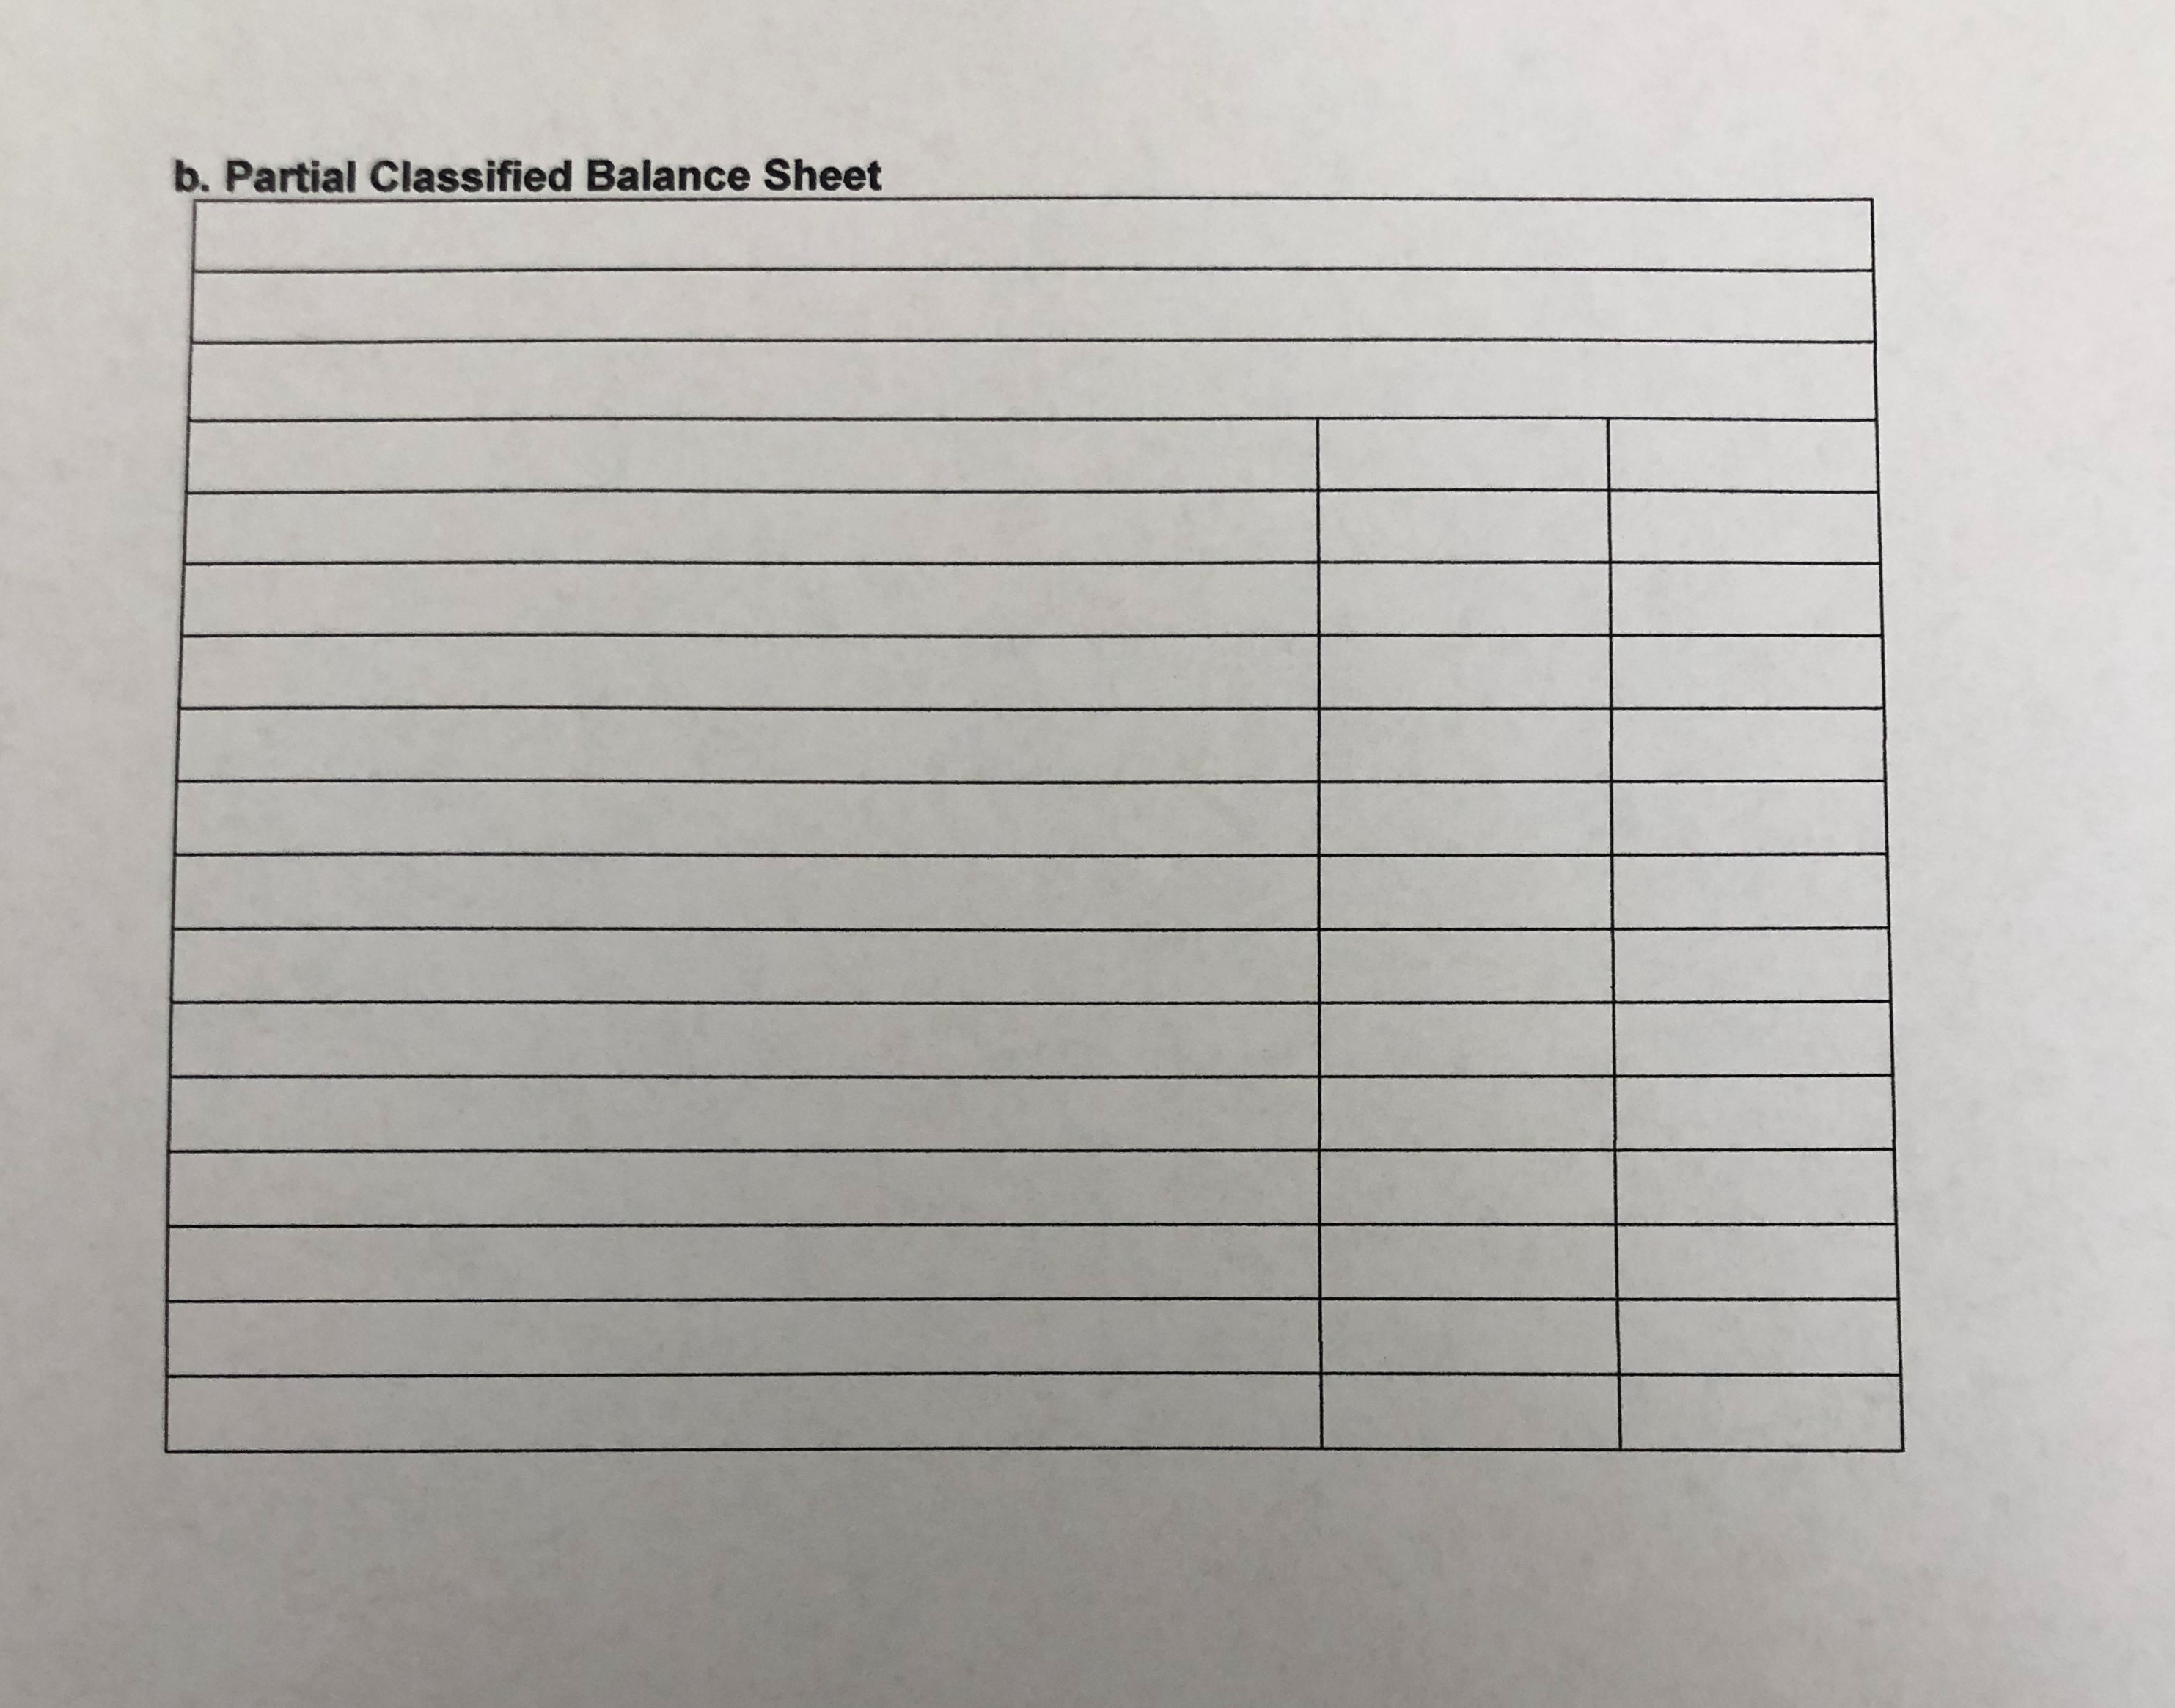 b. Partial Classified Balance Sheet